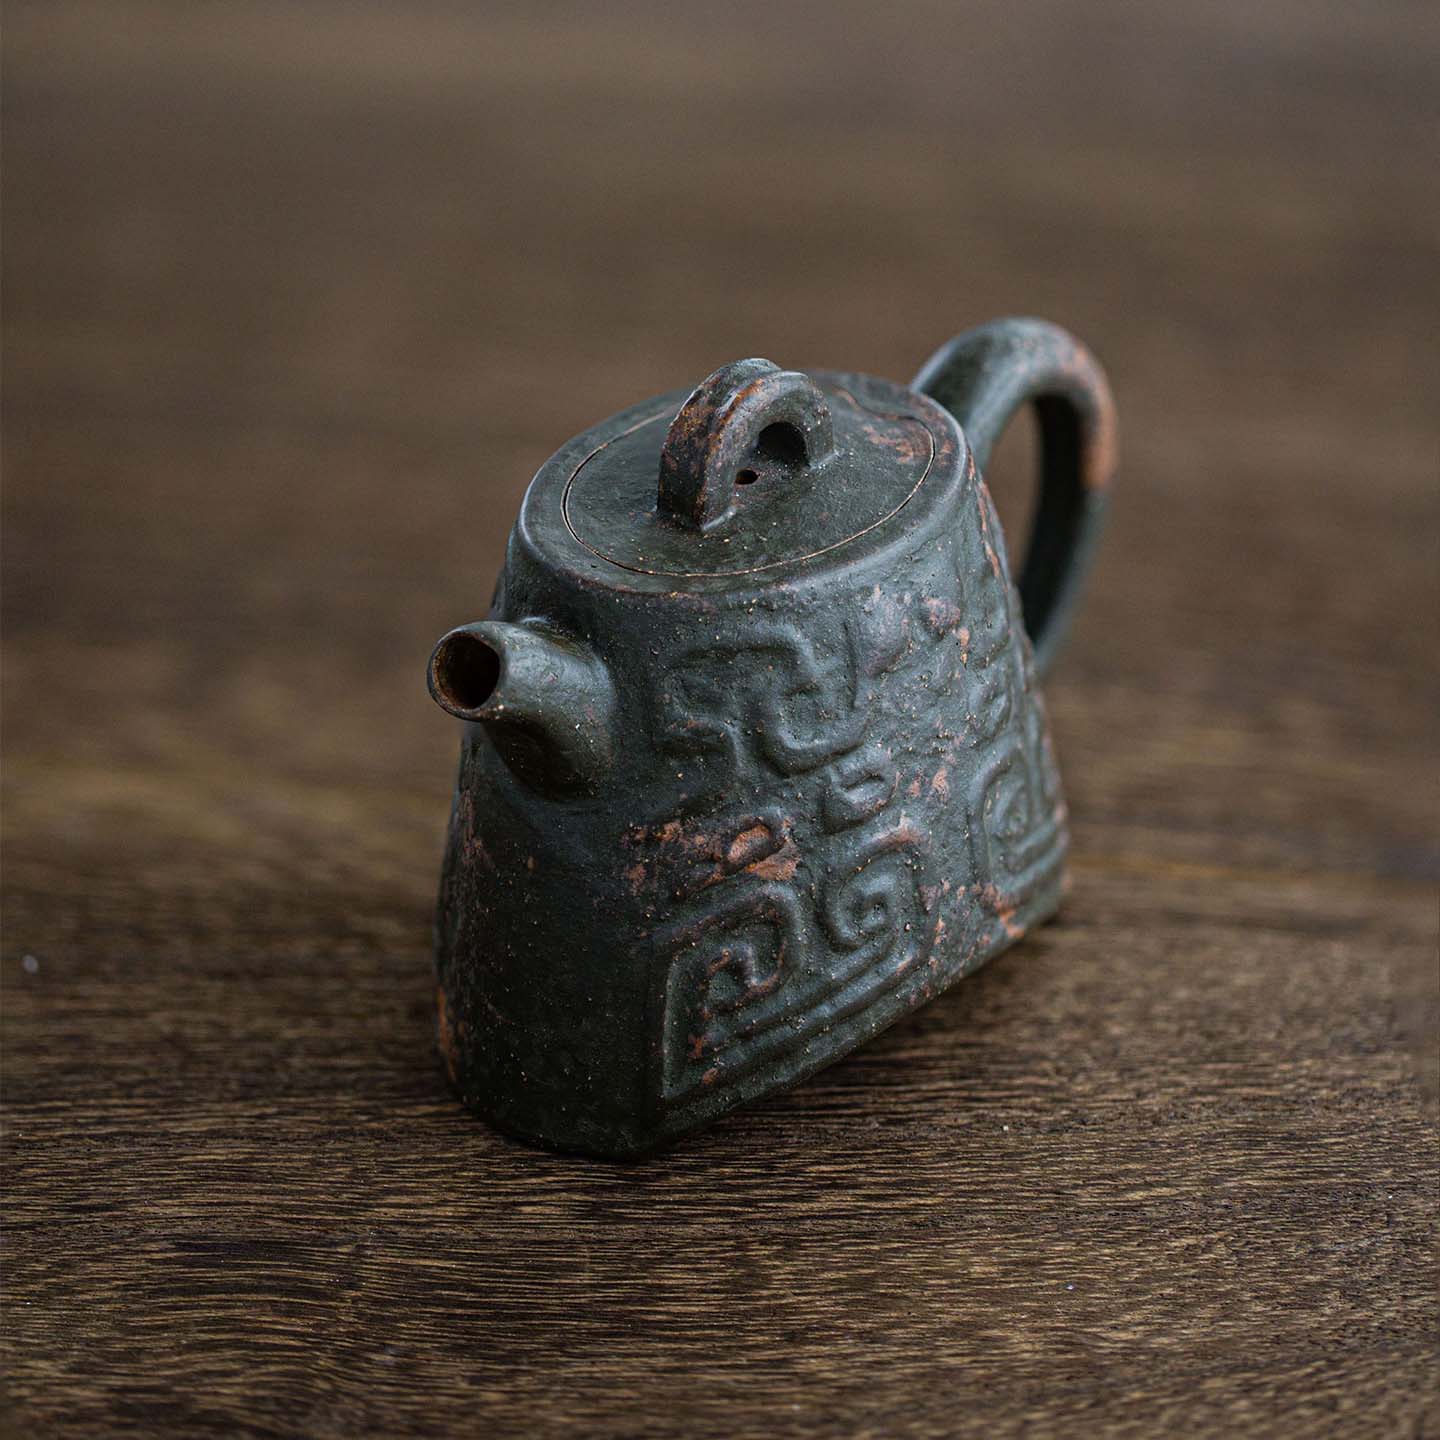 Bian Zhong  Yixing teapot  120ml